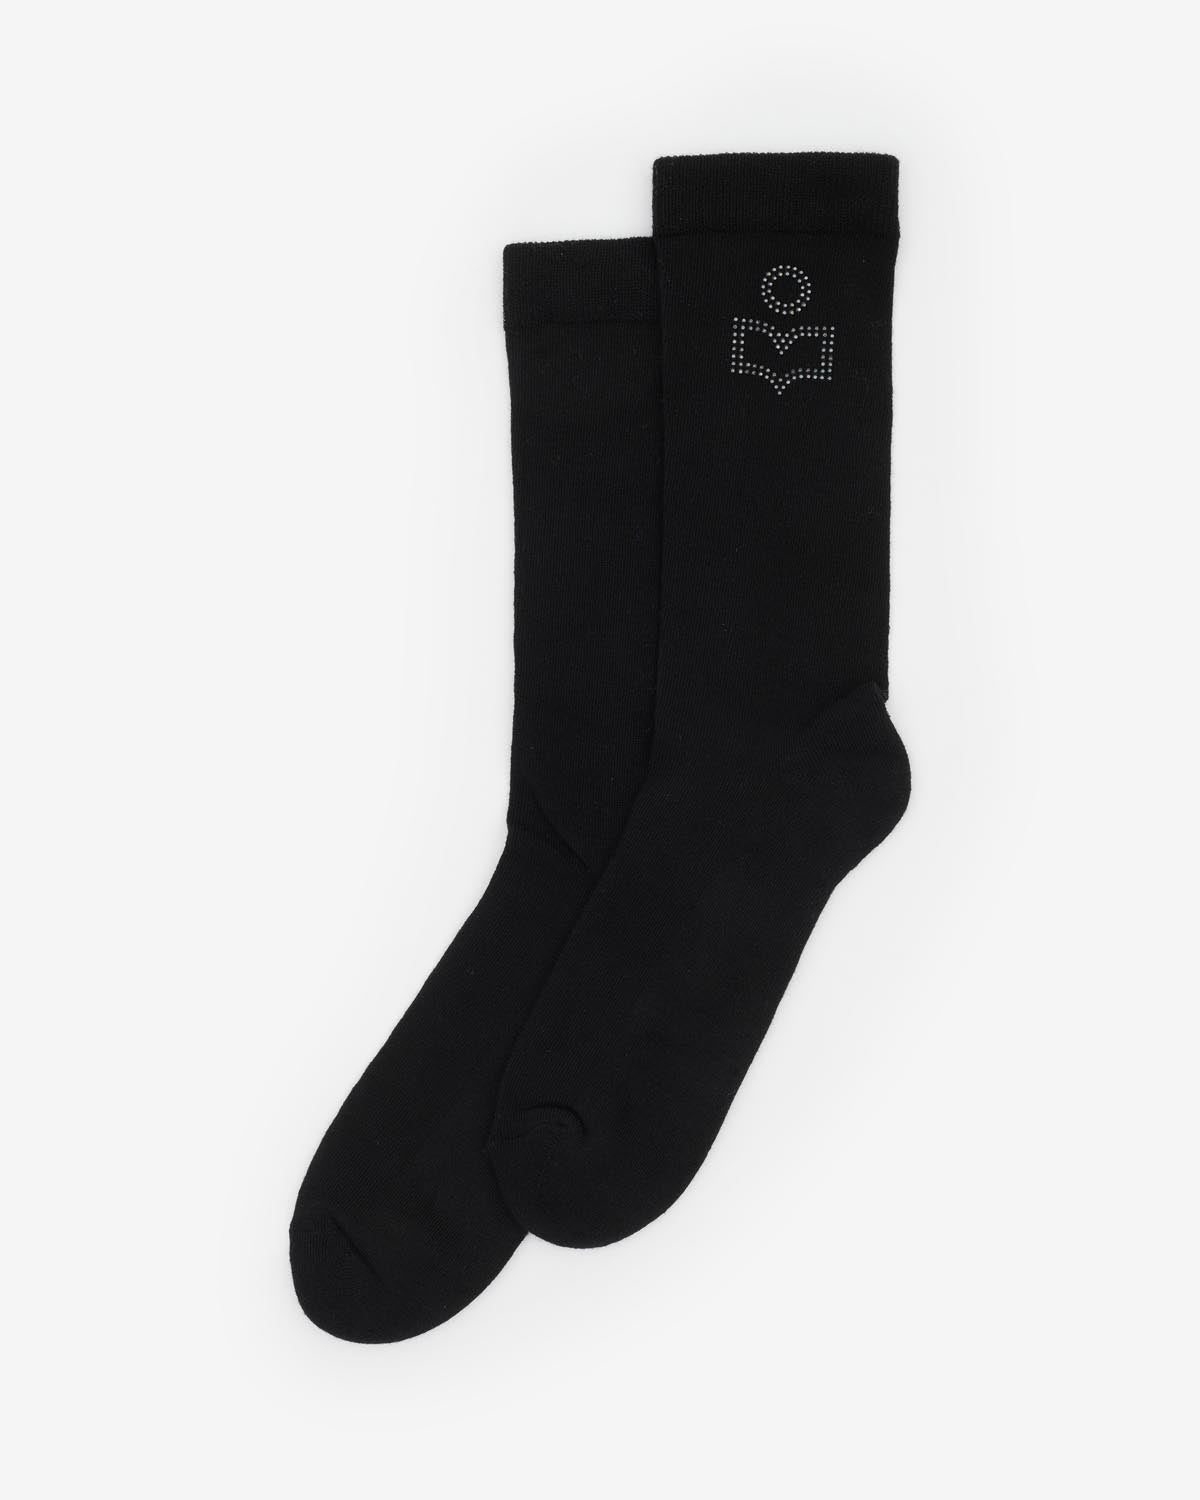 Zorana socks Woman Black-black 2